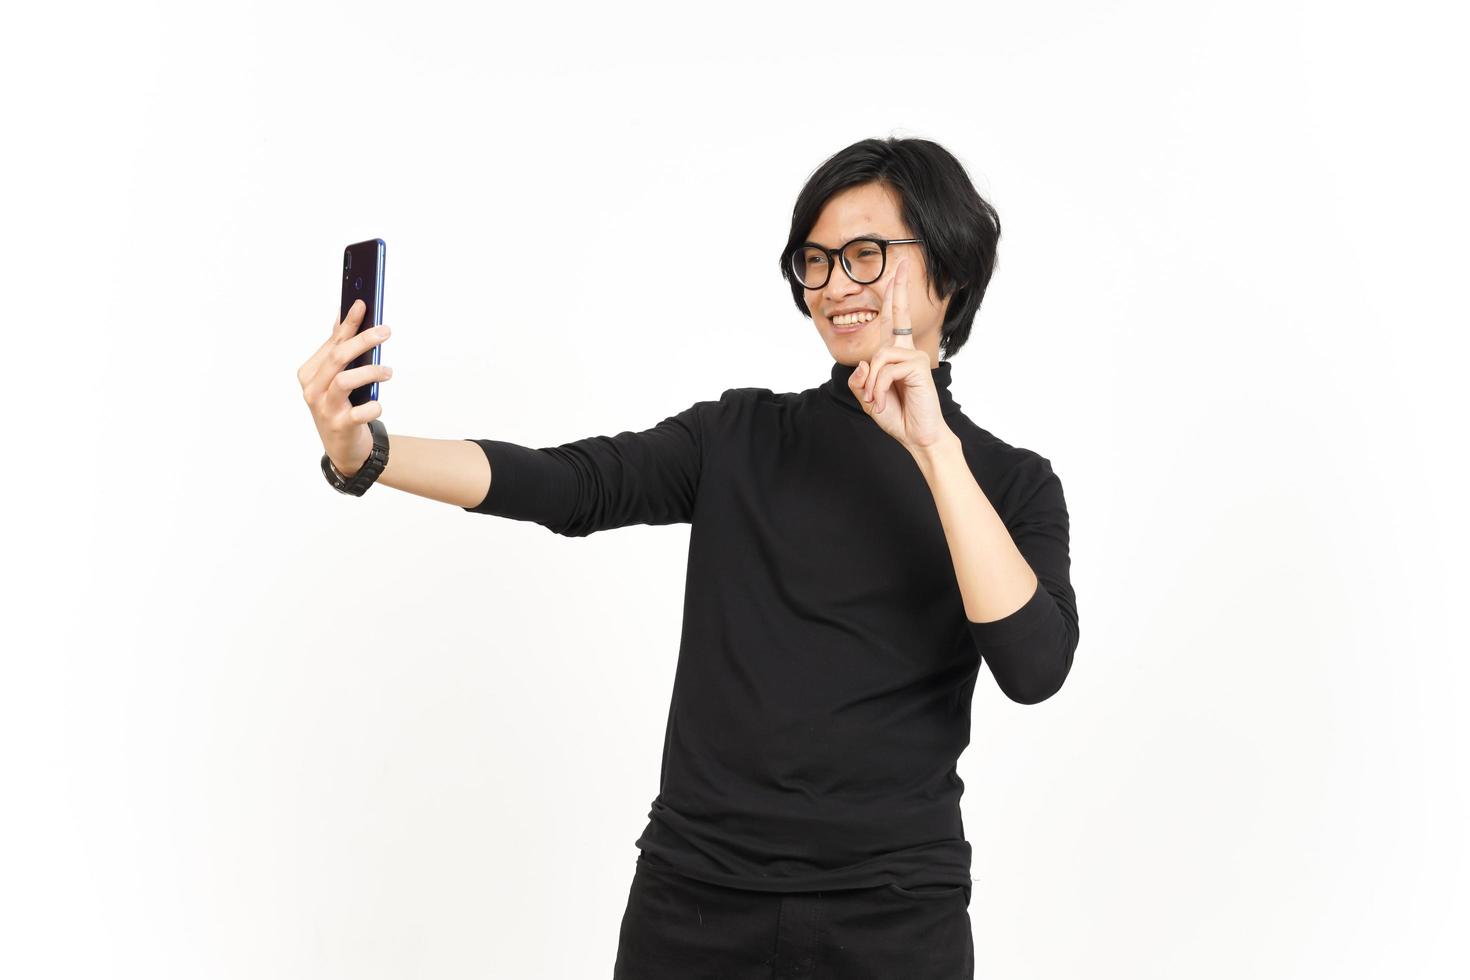 prendre une selfie en utilisant téléphone intelligent de Beau asiatique homme isolé sur blanc Contexte photo